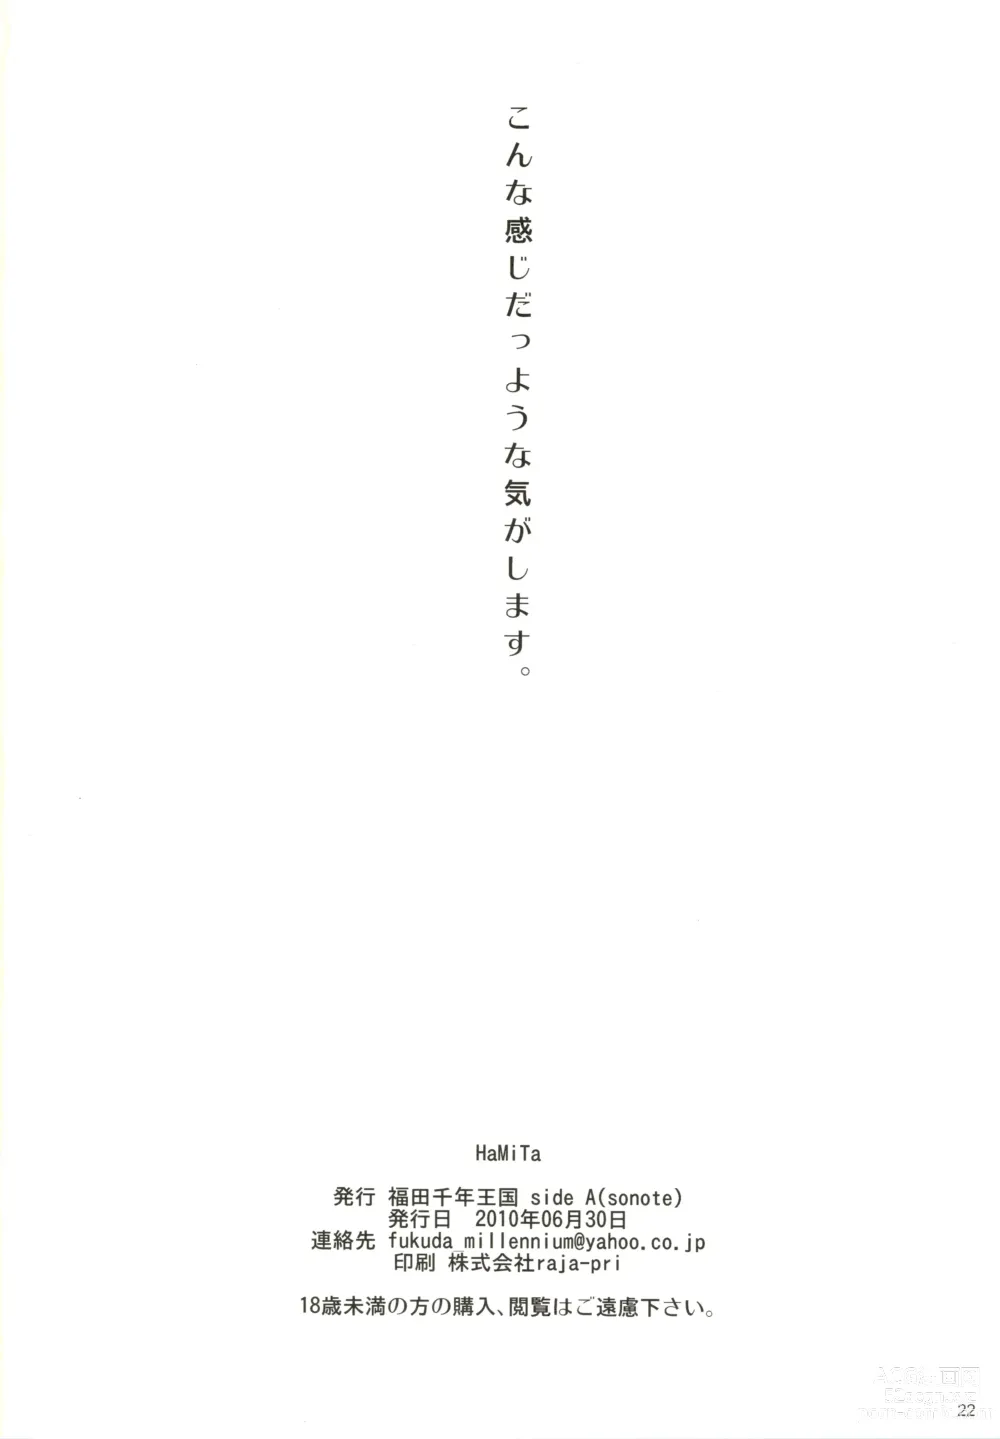 Page 23 of doujinshi HaMiTa